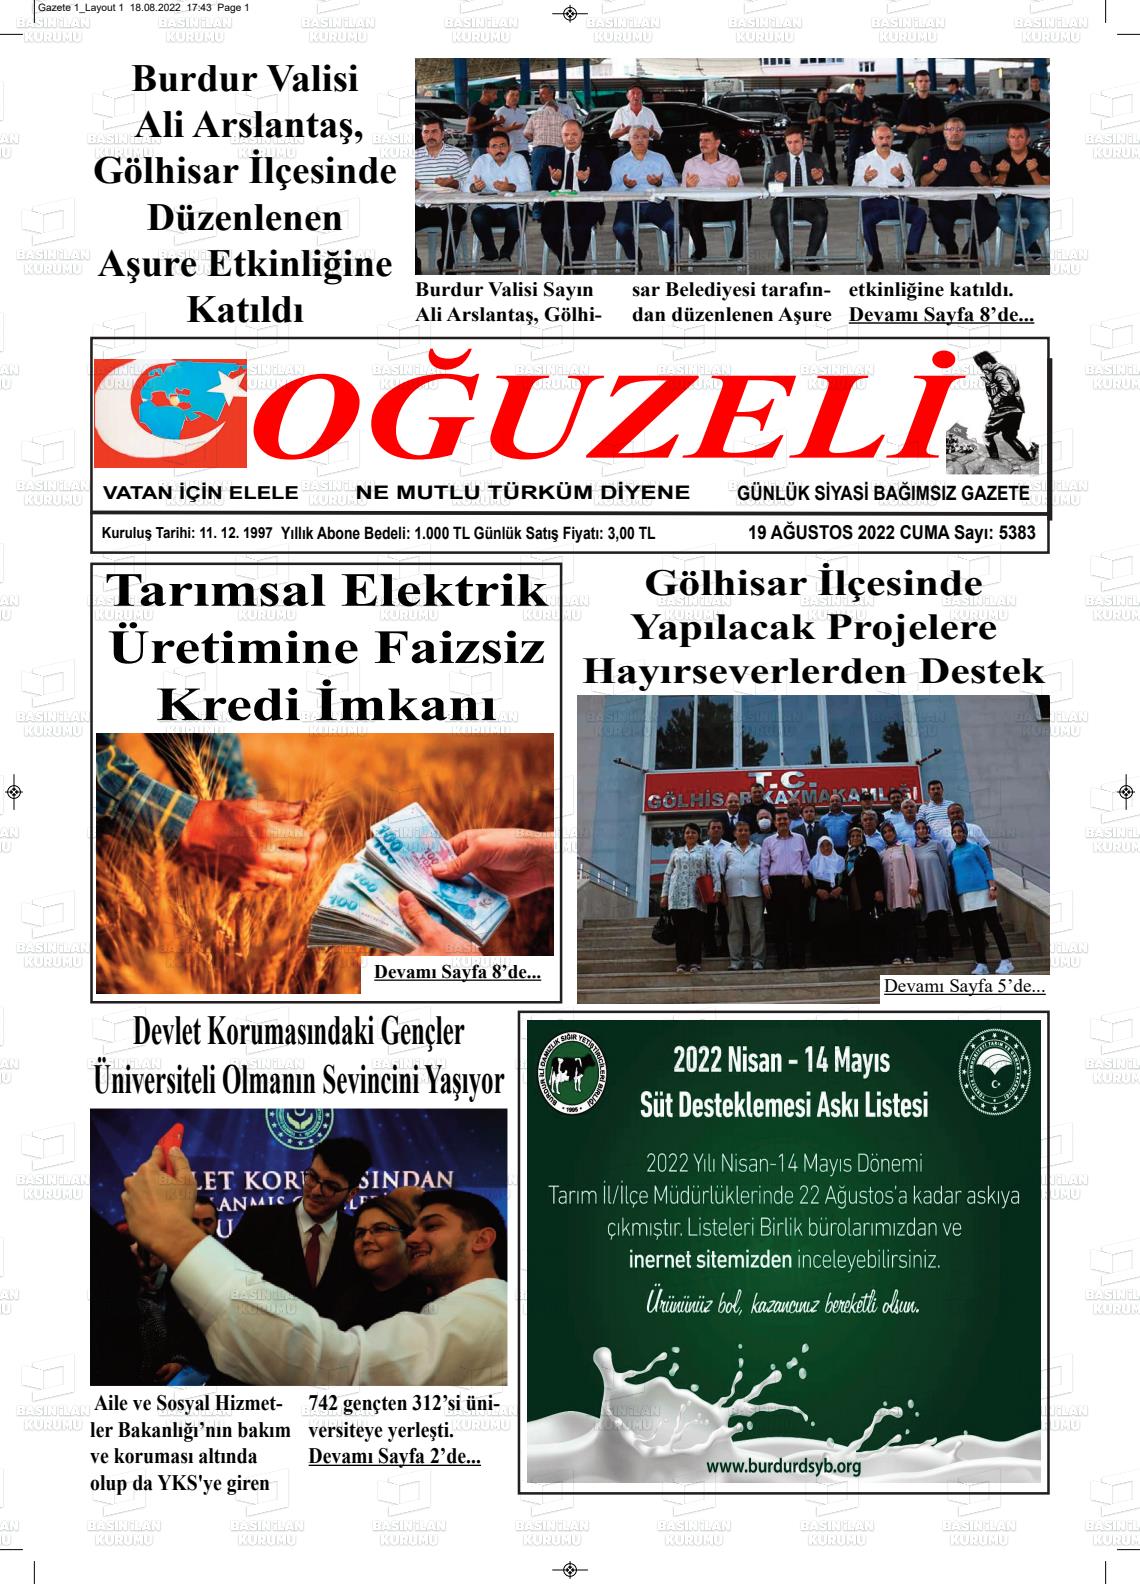 19 Ağustos 2022 Oğuzeli Gazete Manşeti